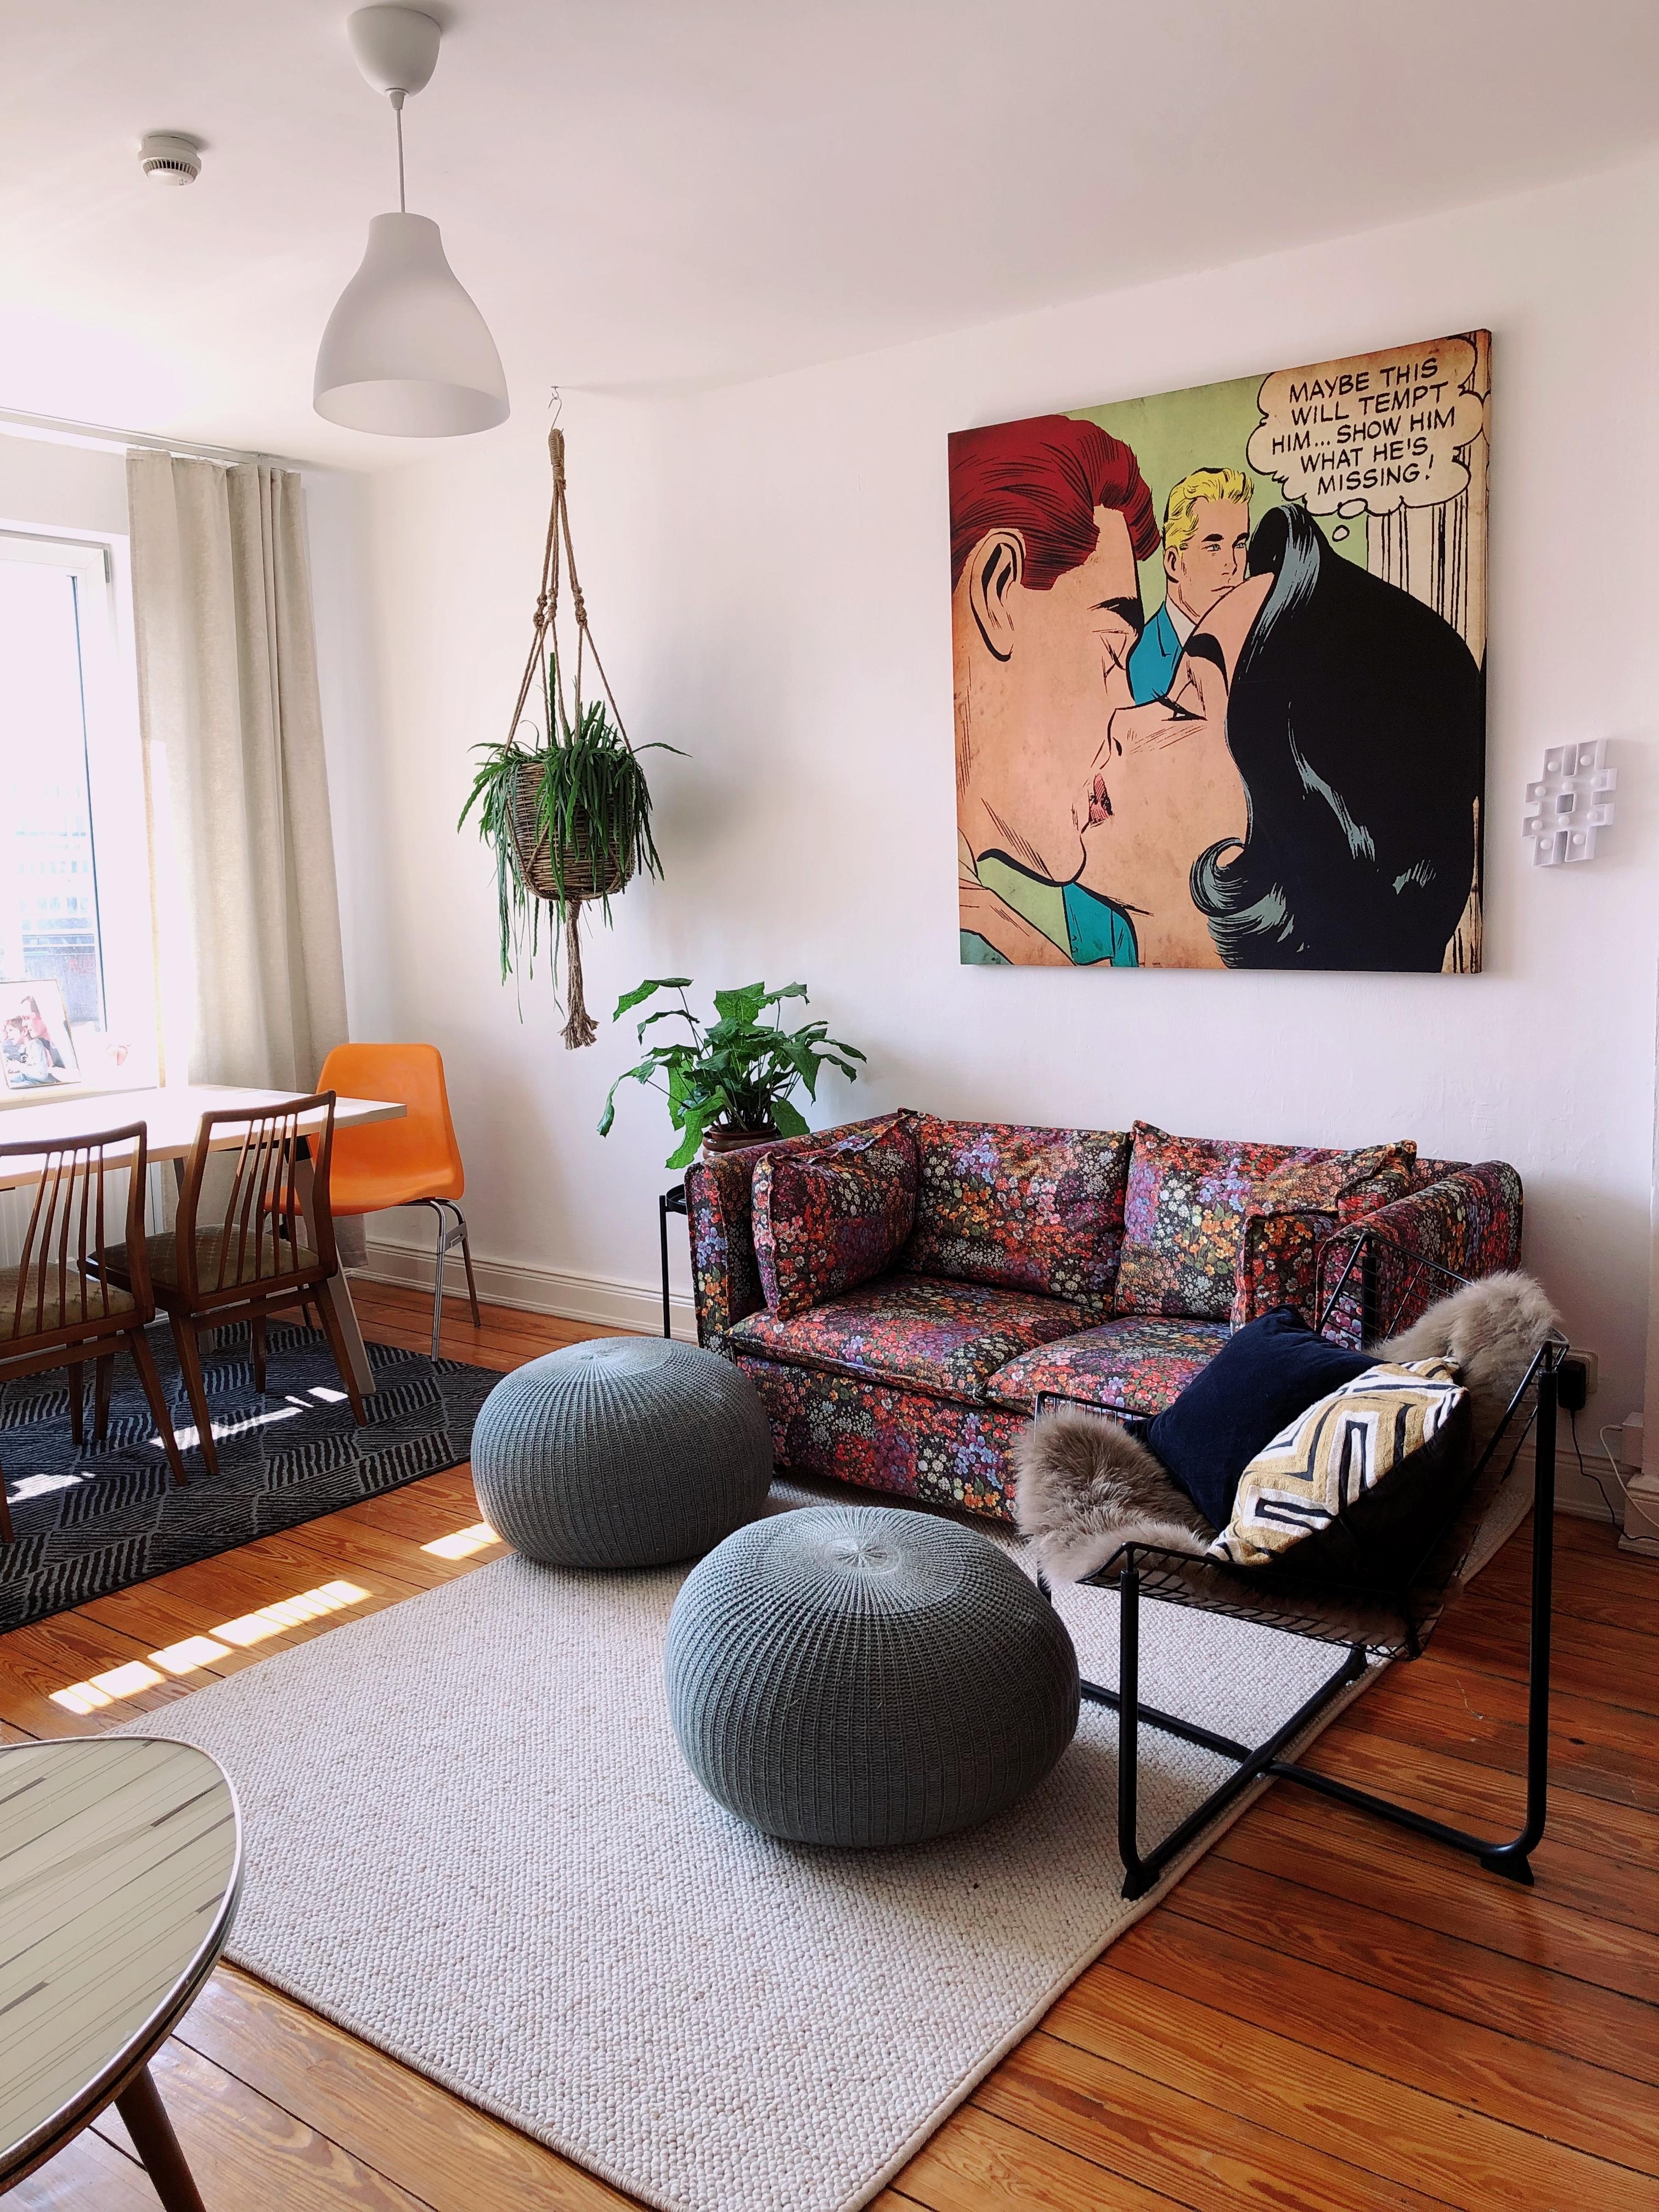 Das Wohnzimmer hat ein Sofa & Pflanzen UpDate bekommen 🙌🏻✨
#winkelvansinkel #retro #ikea